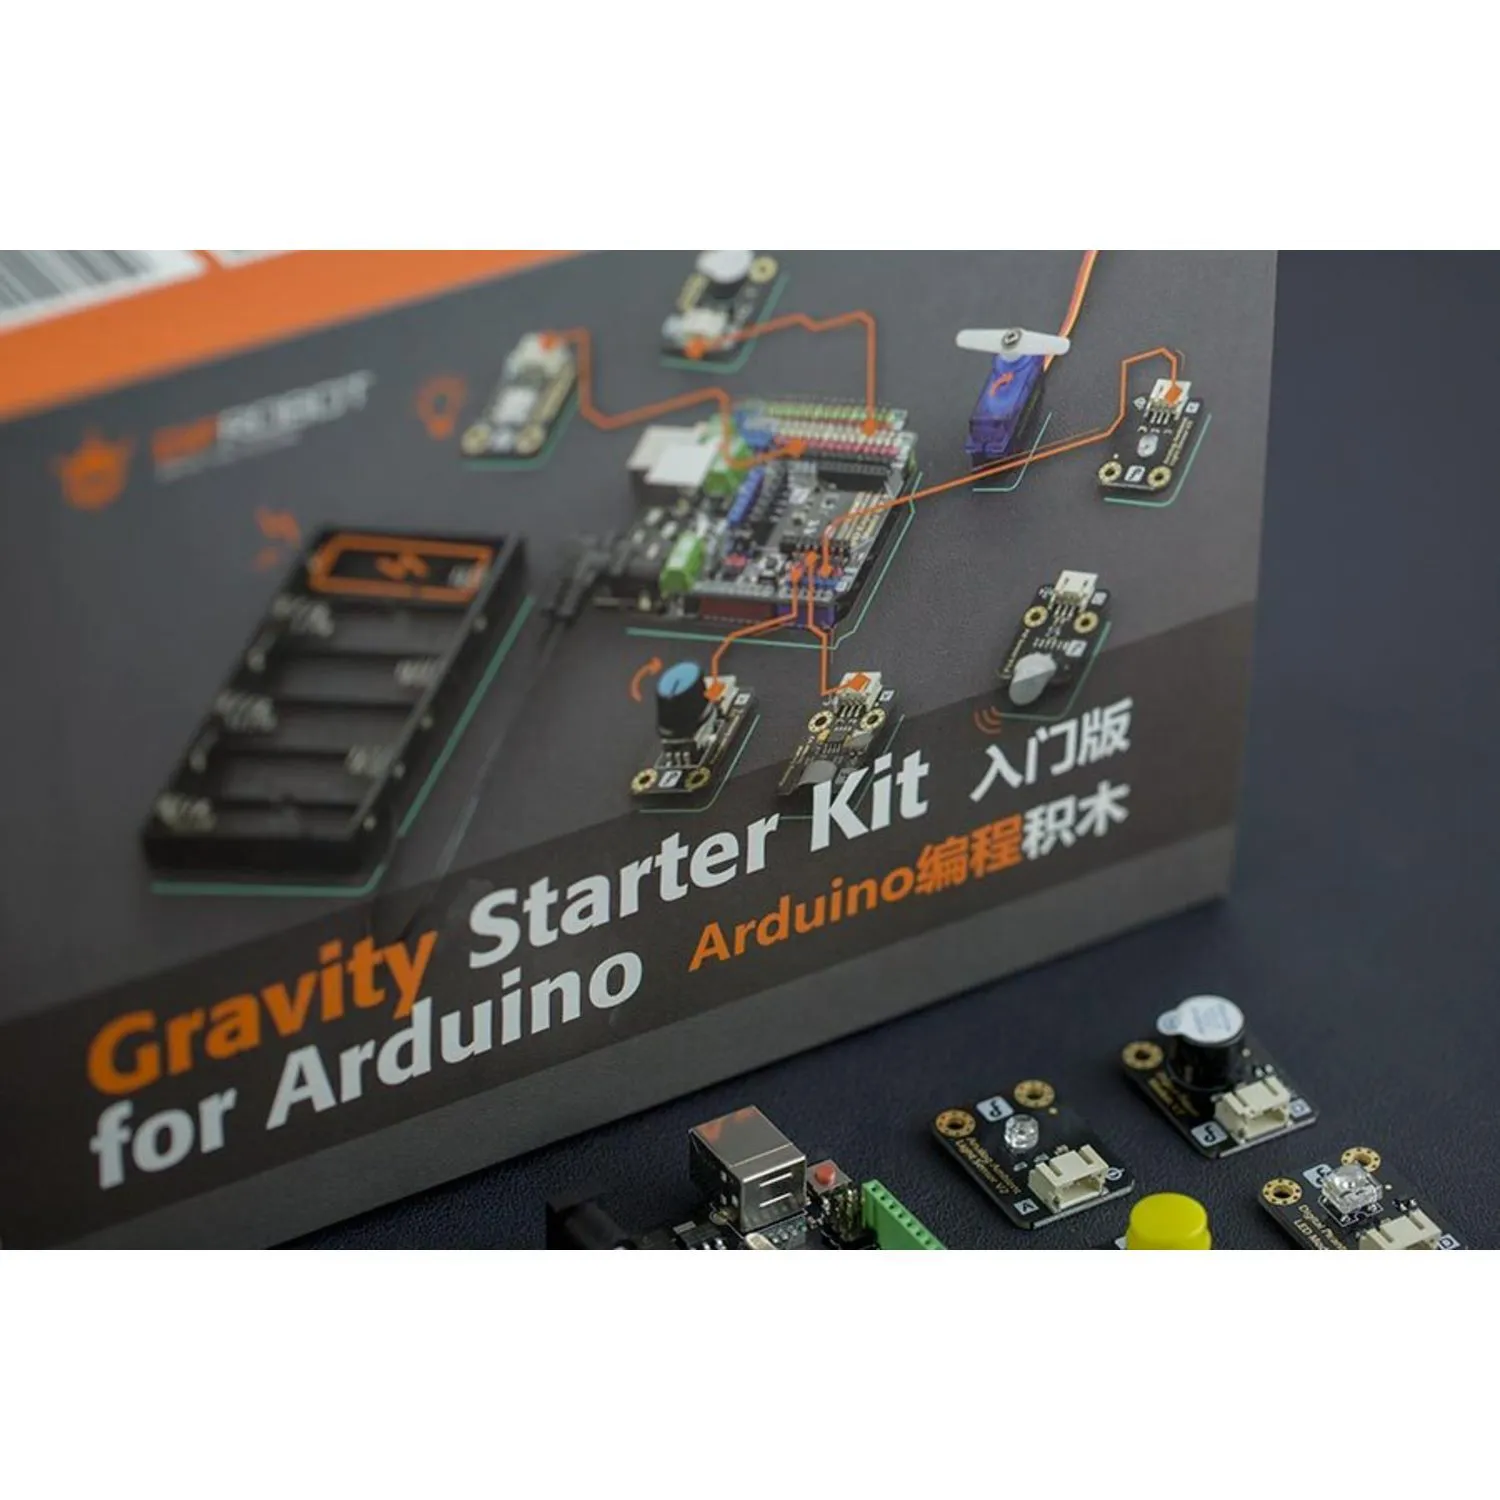 Photo of Gravity: Starter Kit for Arduino